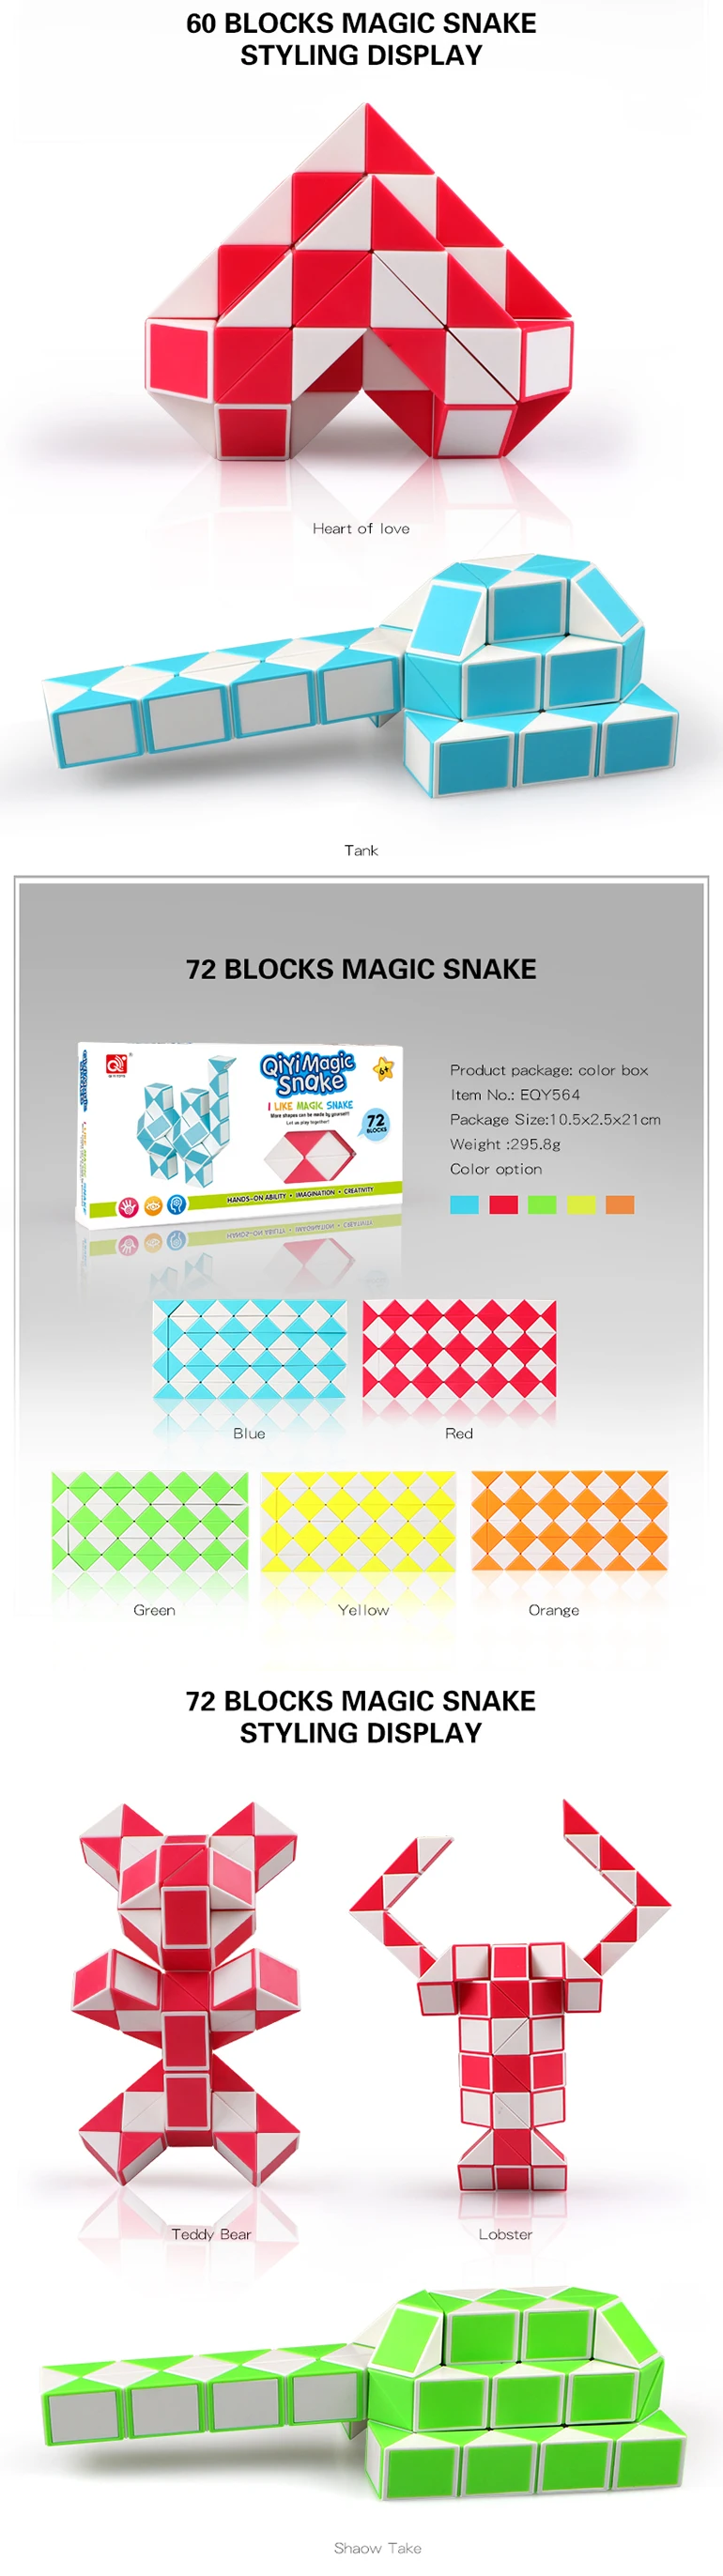 magic snake 72